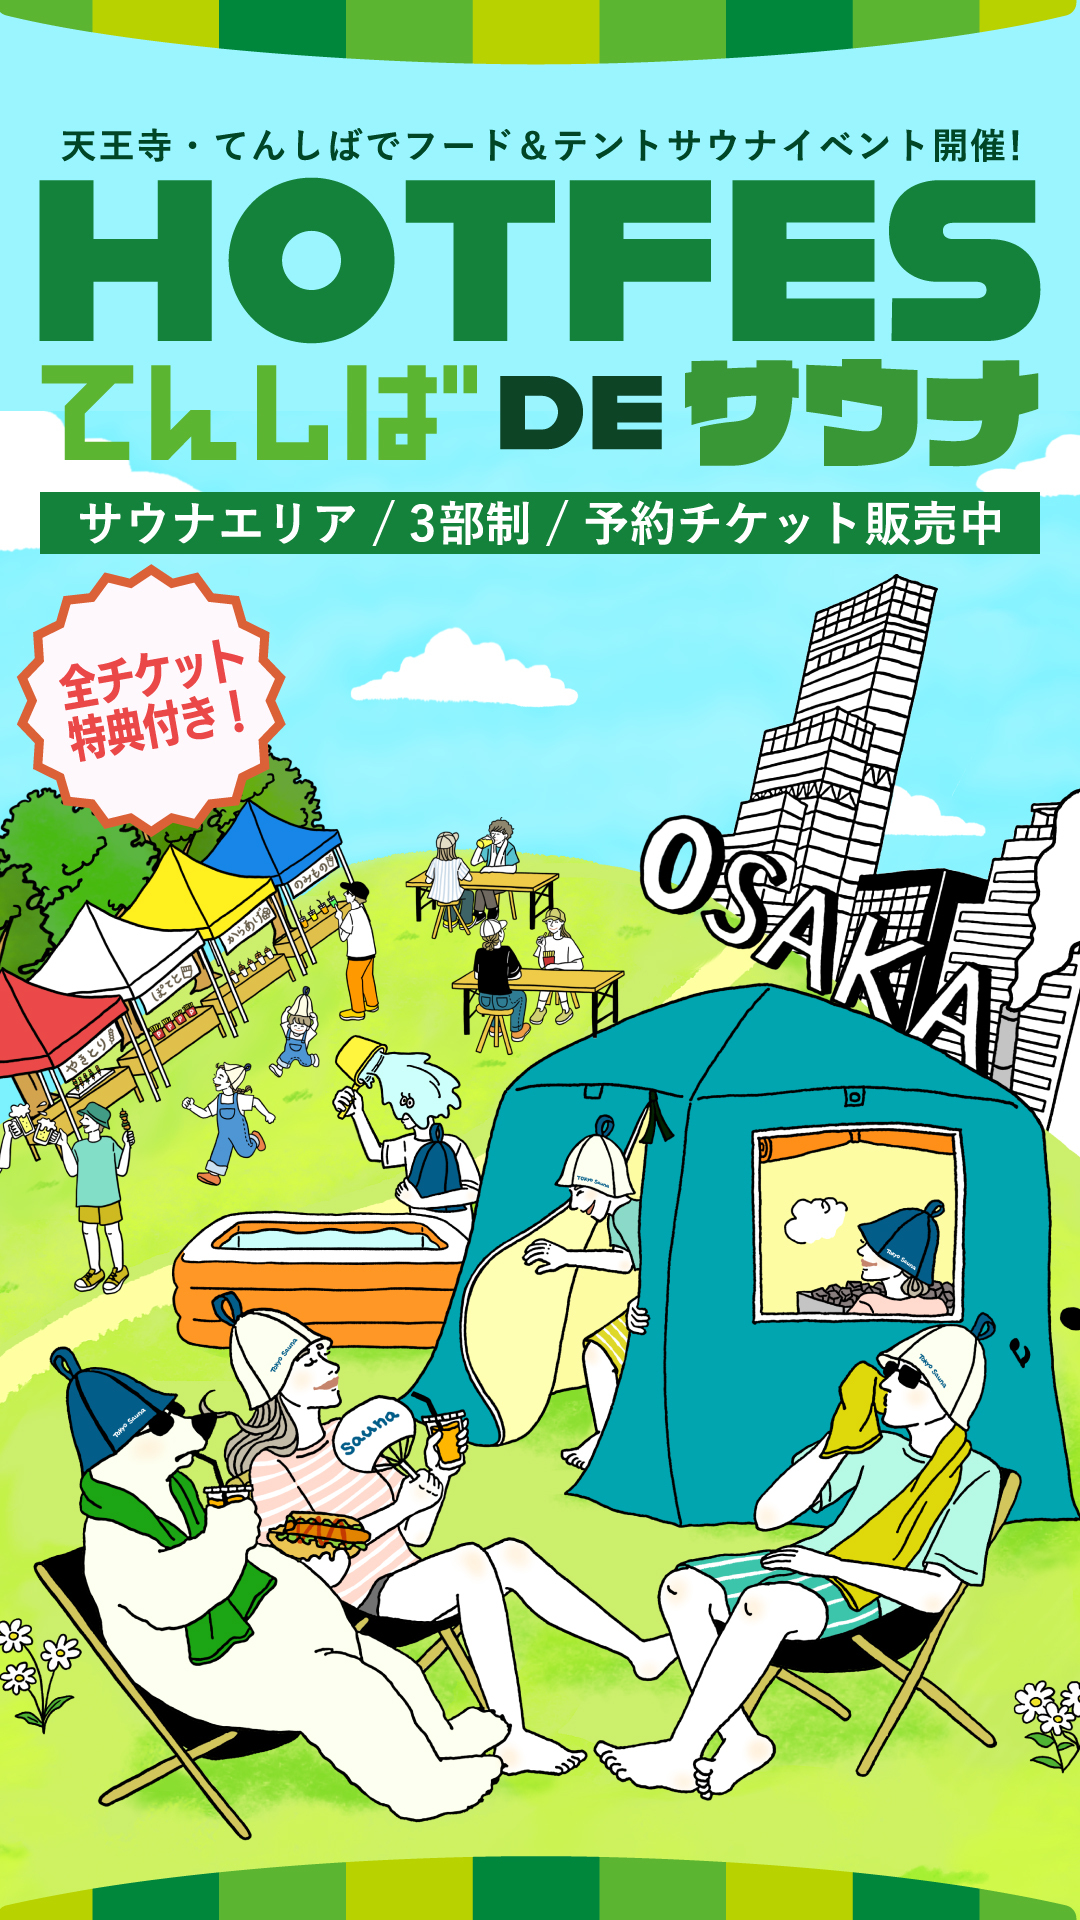 【tokyosauna】サウナイベント「HOT FES てんしば de サウナ」に出展！のサブ画像1